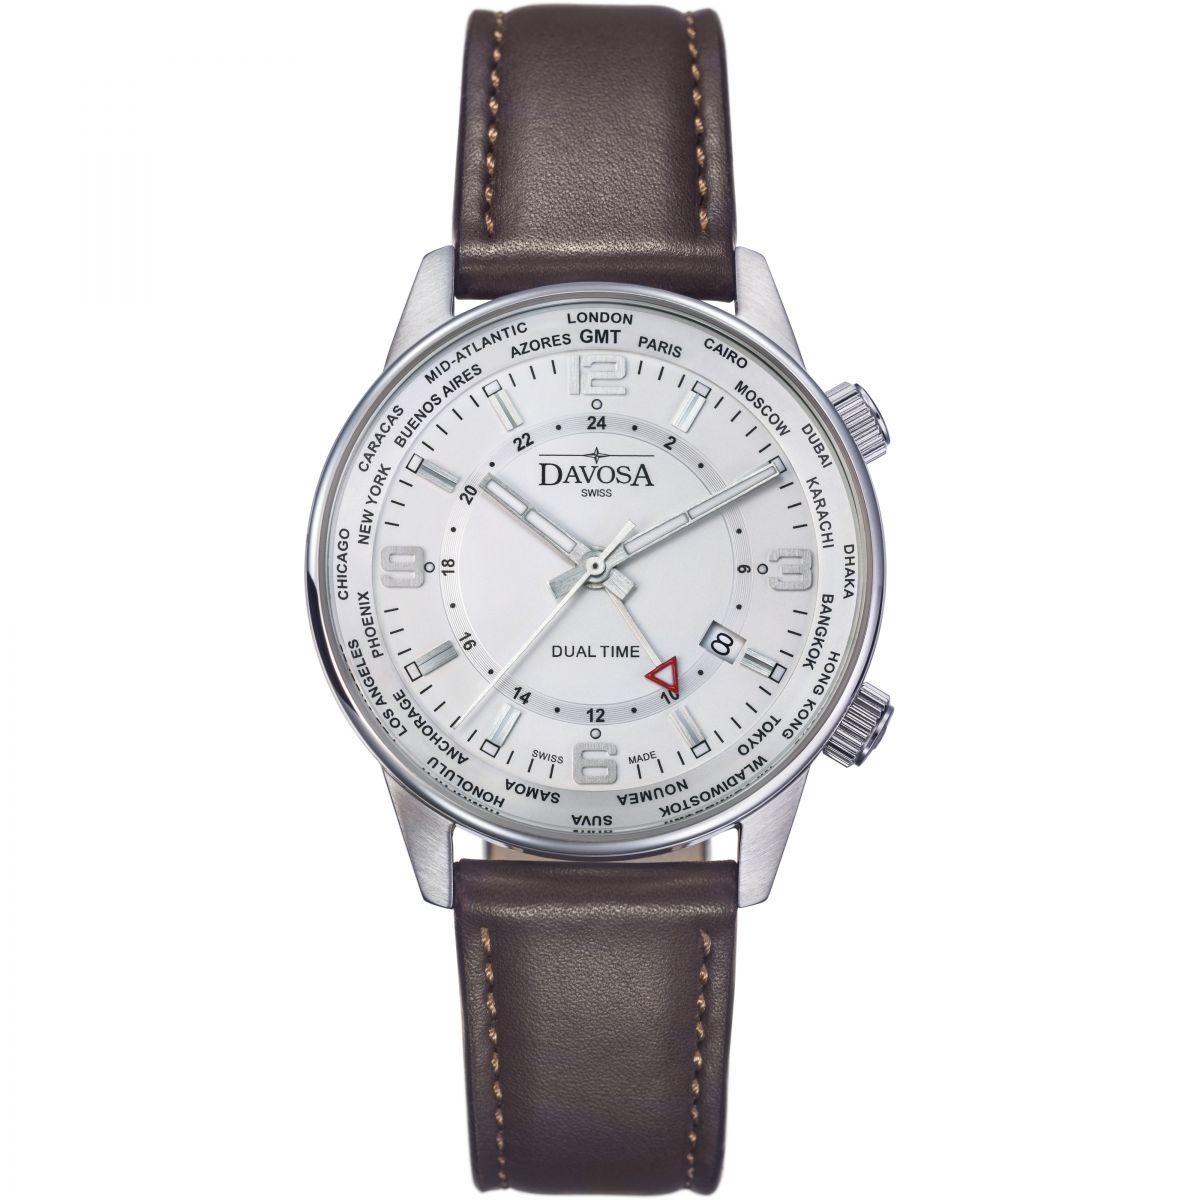 Davosa - White Watch Watch Shop Men GOOFASH